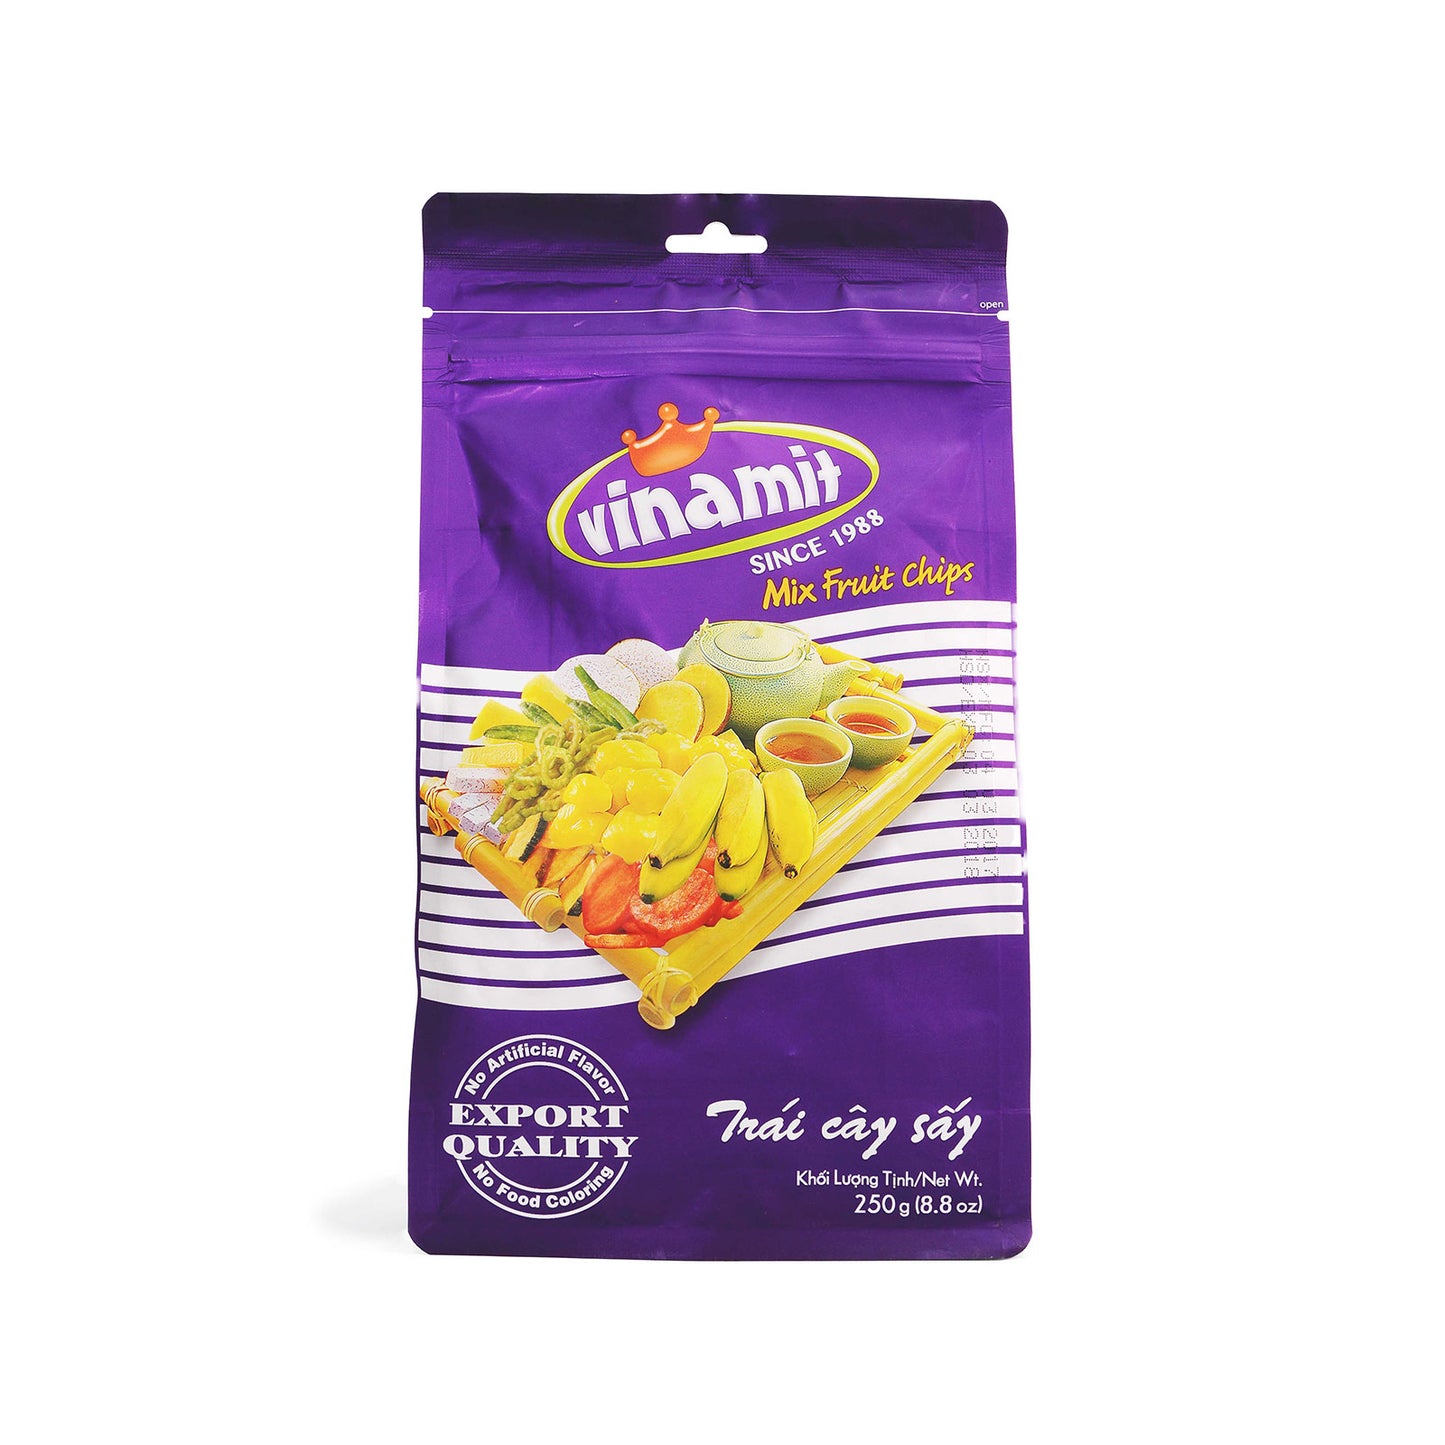 Vinamit Vietnam Fruit Chips Jack Fruit / Mixed Fruit / Chips - High Quality Food